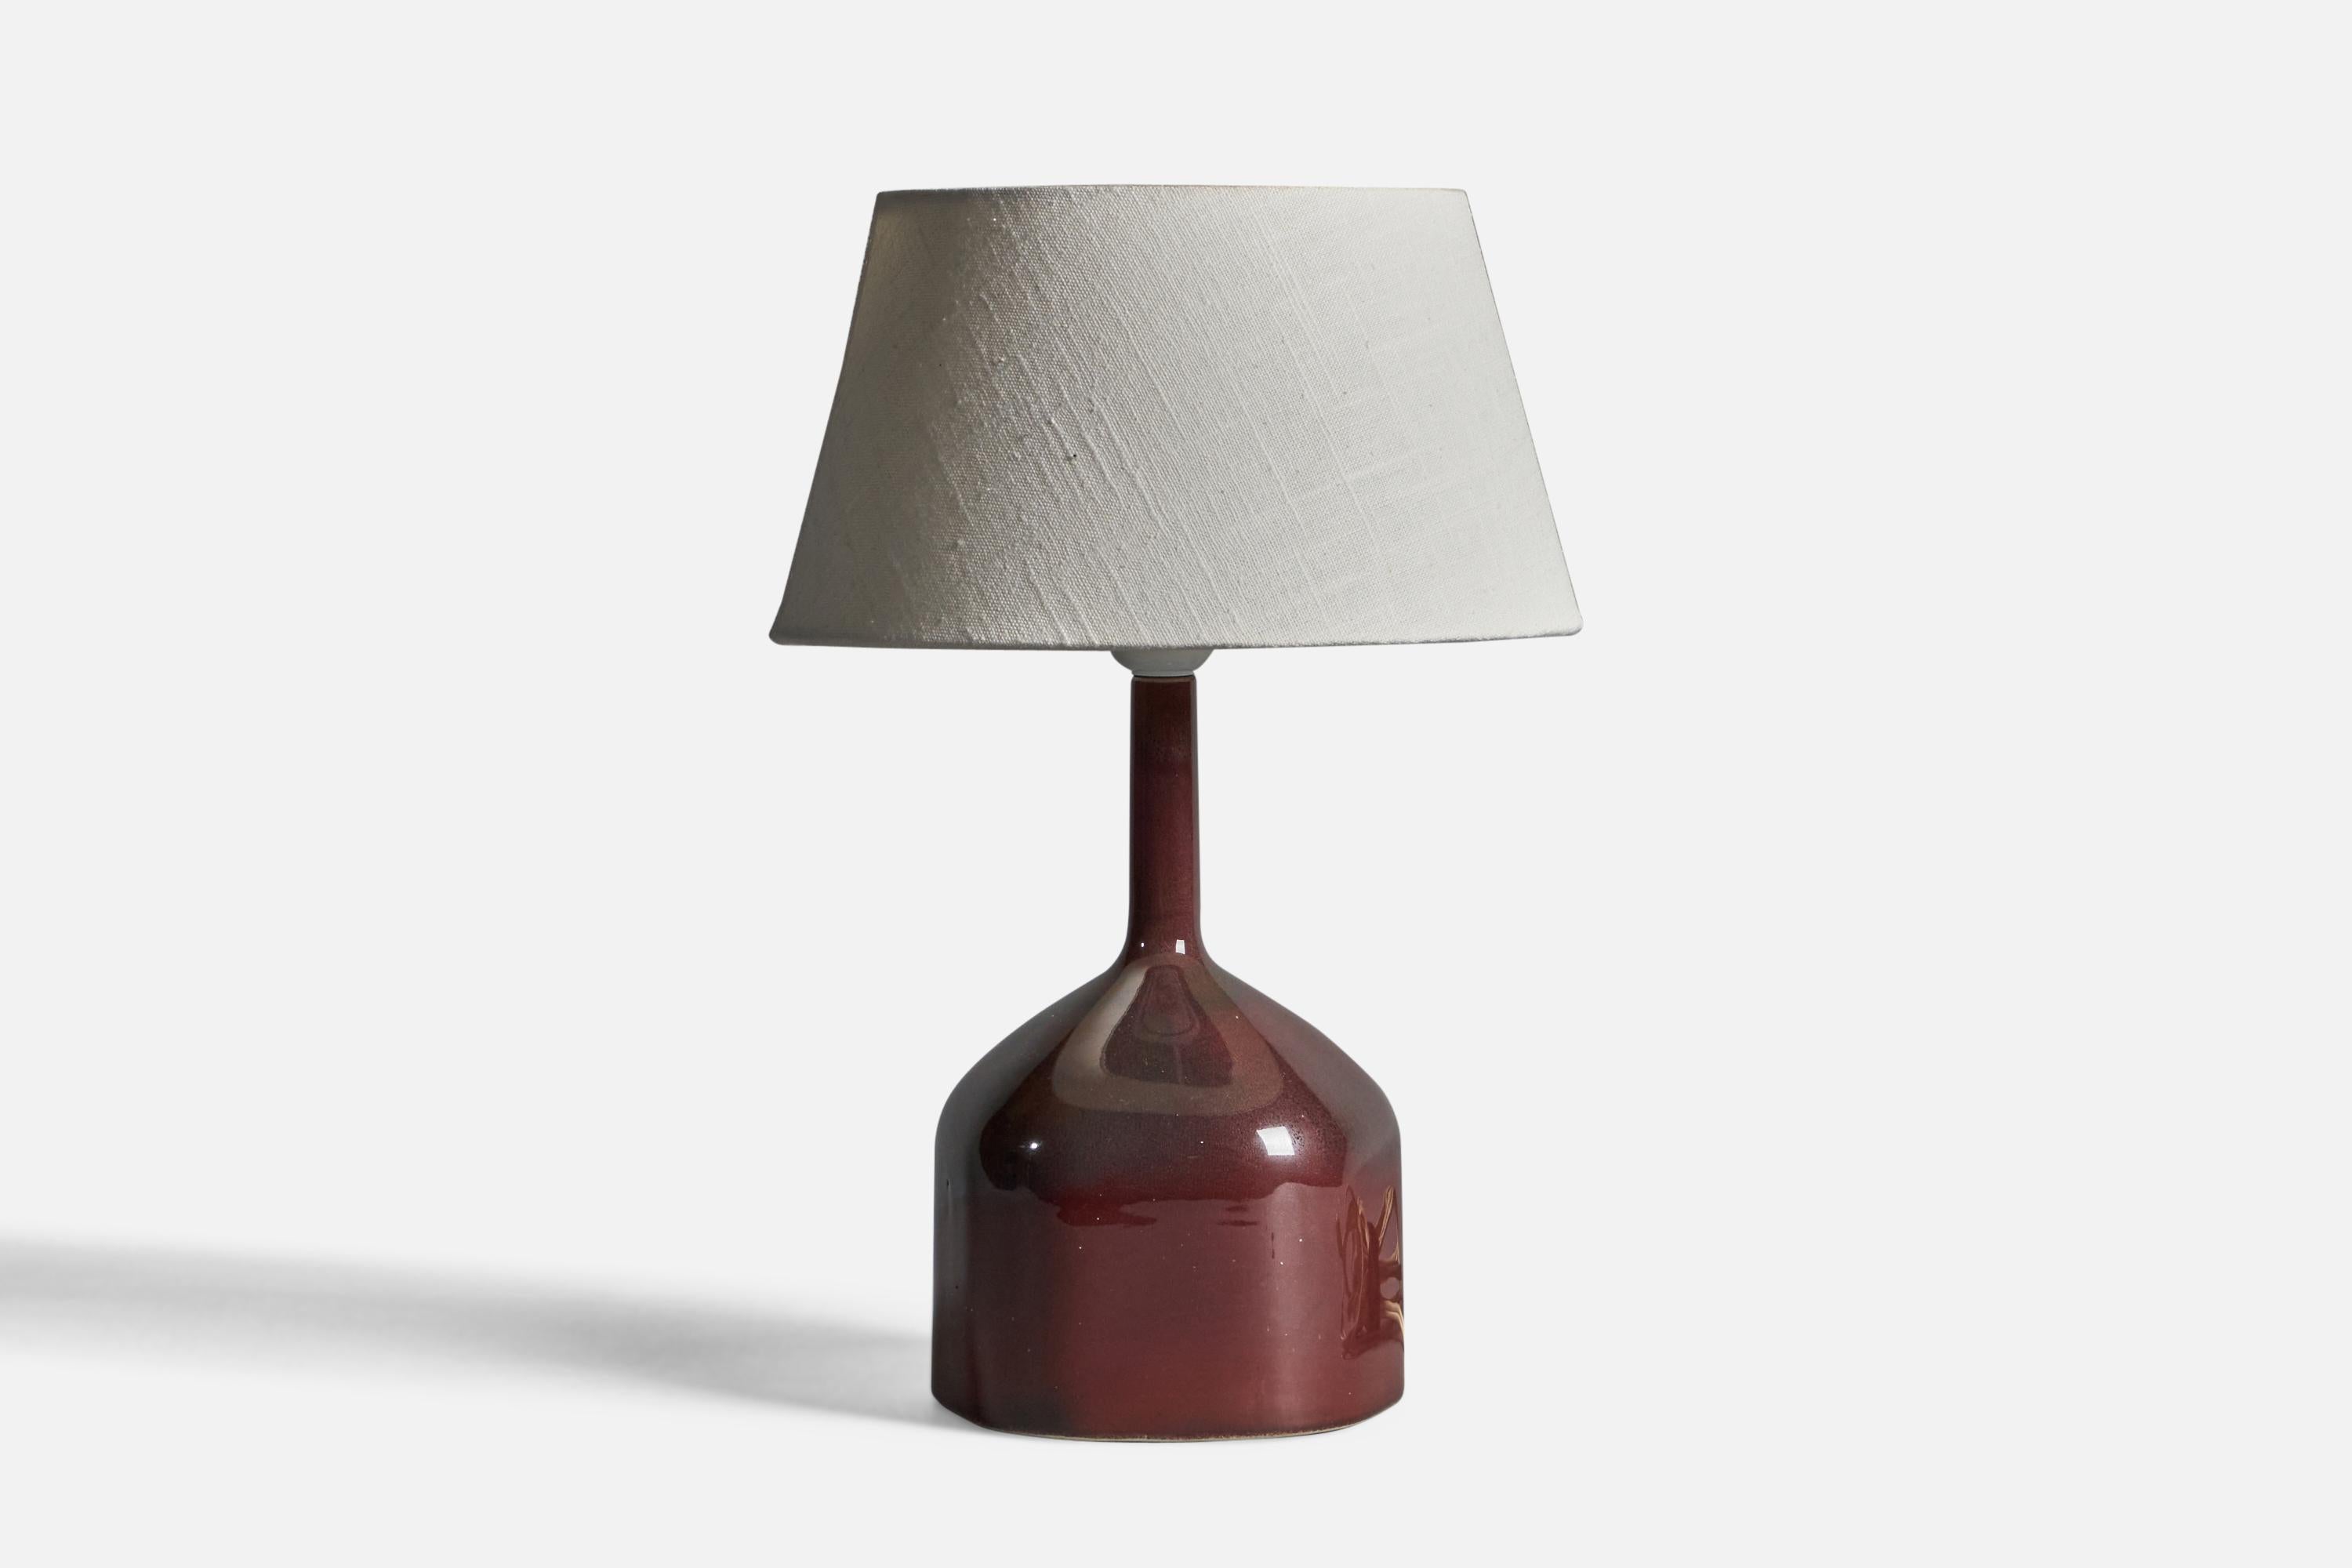 Lampe de table en grès émaillé brun et tissu, conçue par Karin Björquist et produite par Gustavsbergs, Suède, années 1960.

Dimensions globales (pouces) : 15.25